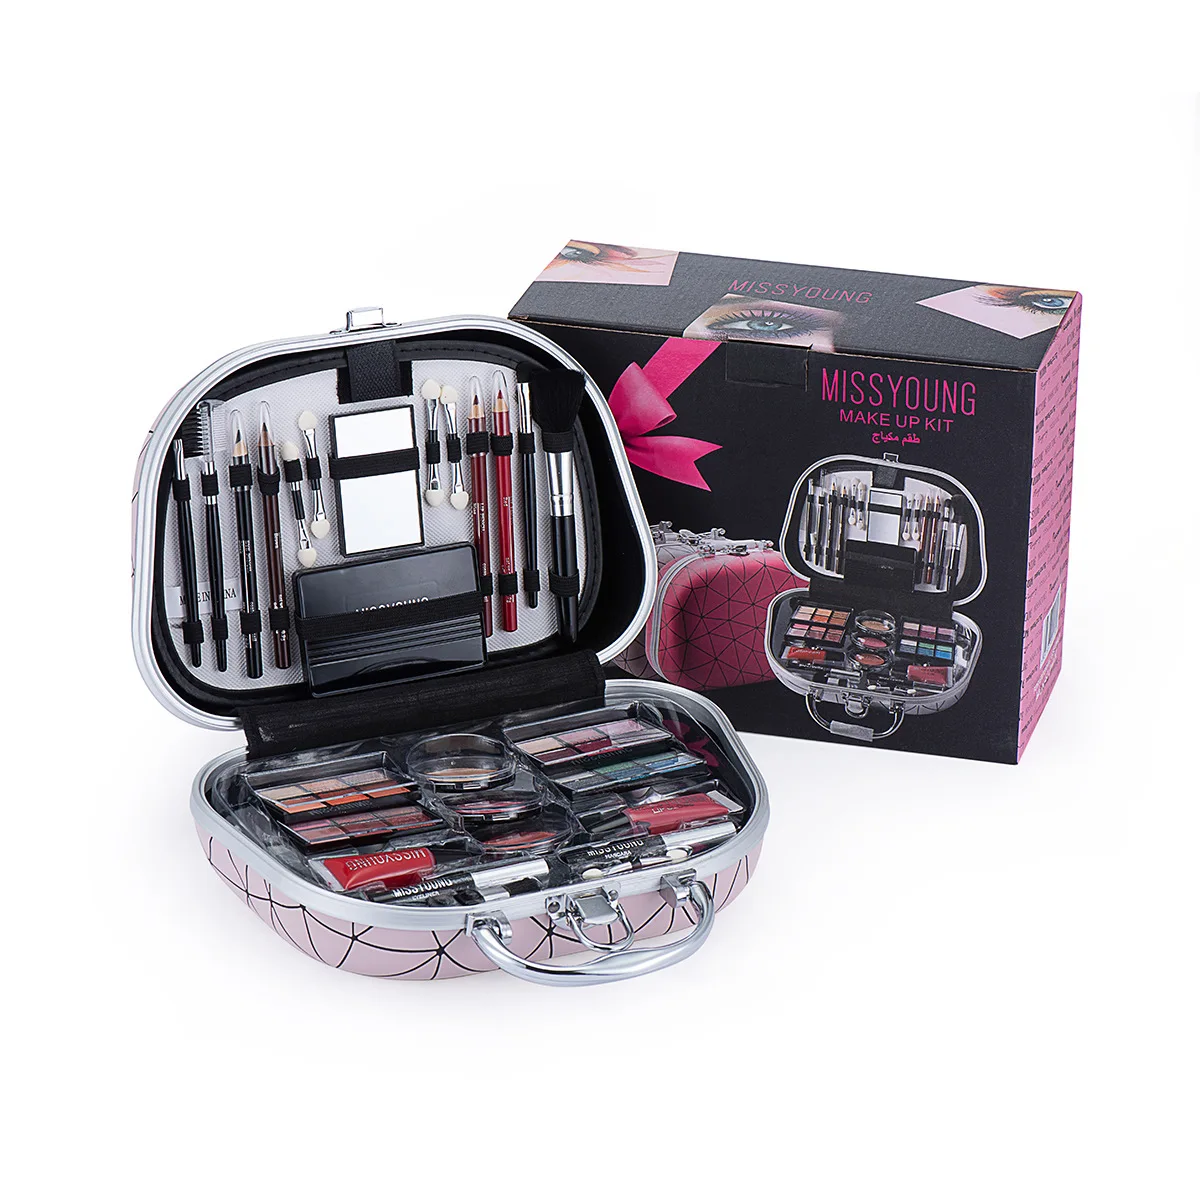 Gift Sets Cosmetic Sets Beauty Combo Sets Eyeshadow Blush Mascara Makeup Brushes make up kit  makeup set box